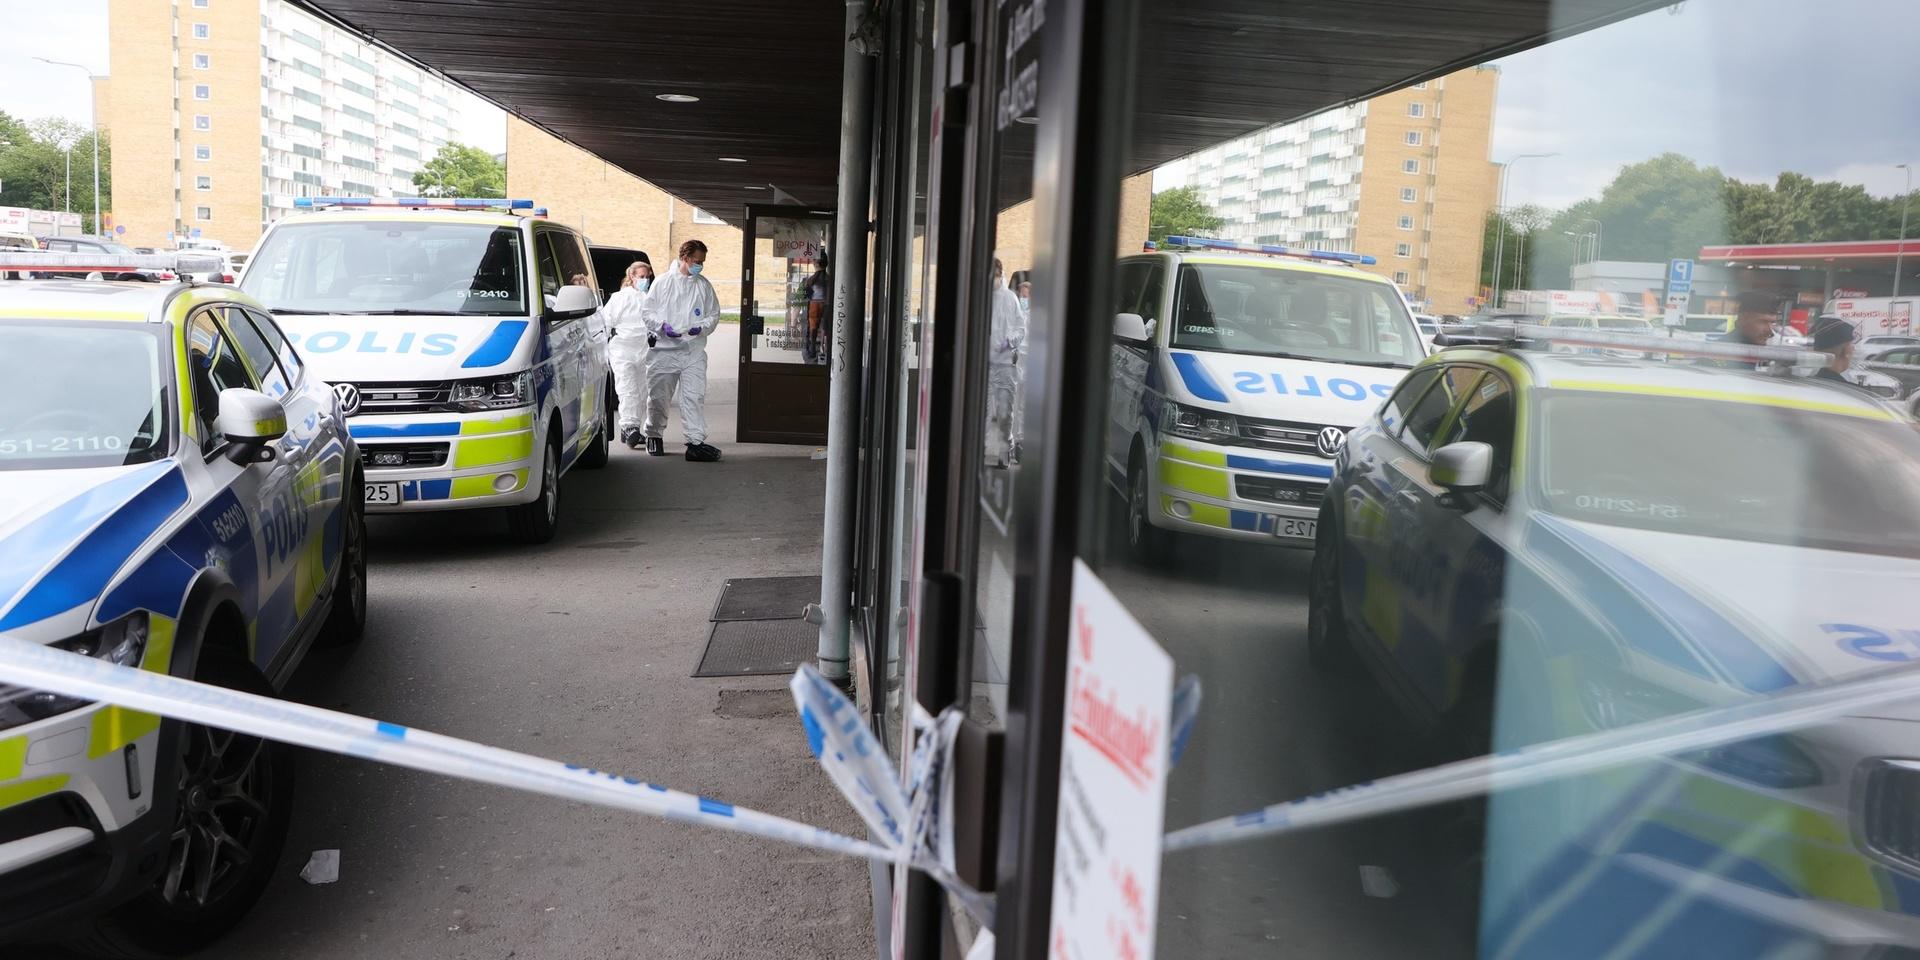 En man i 25-årsåldern sköts till döds inne på en salong vid Marklandsgatan i Göteborg. Den brutala händelsen fångades på film.